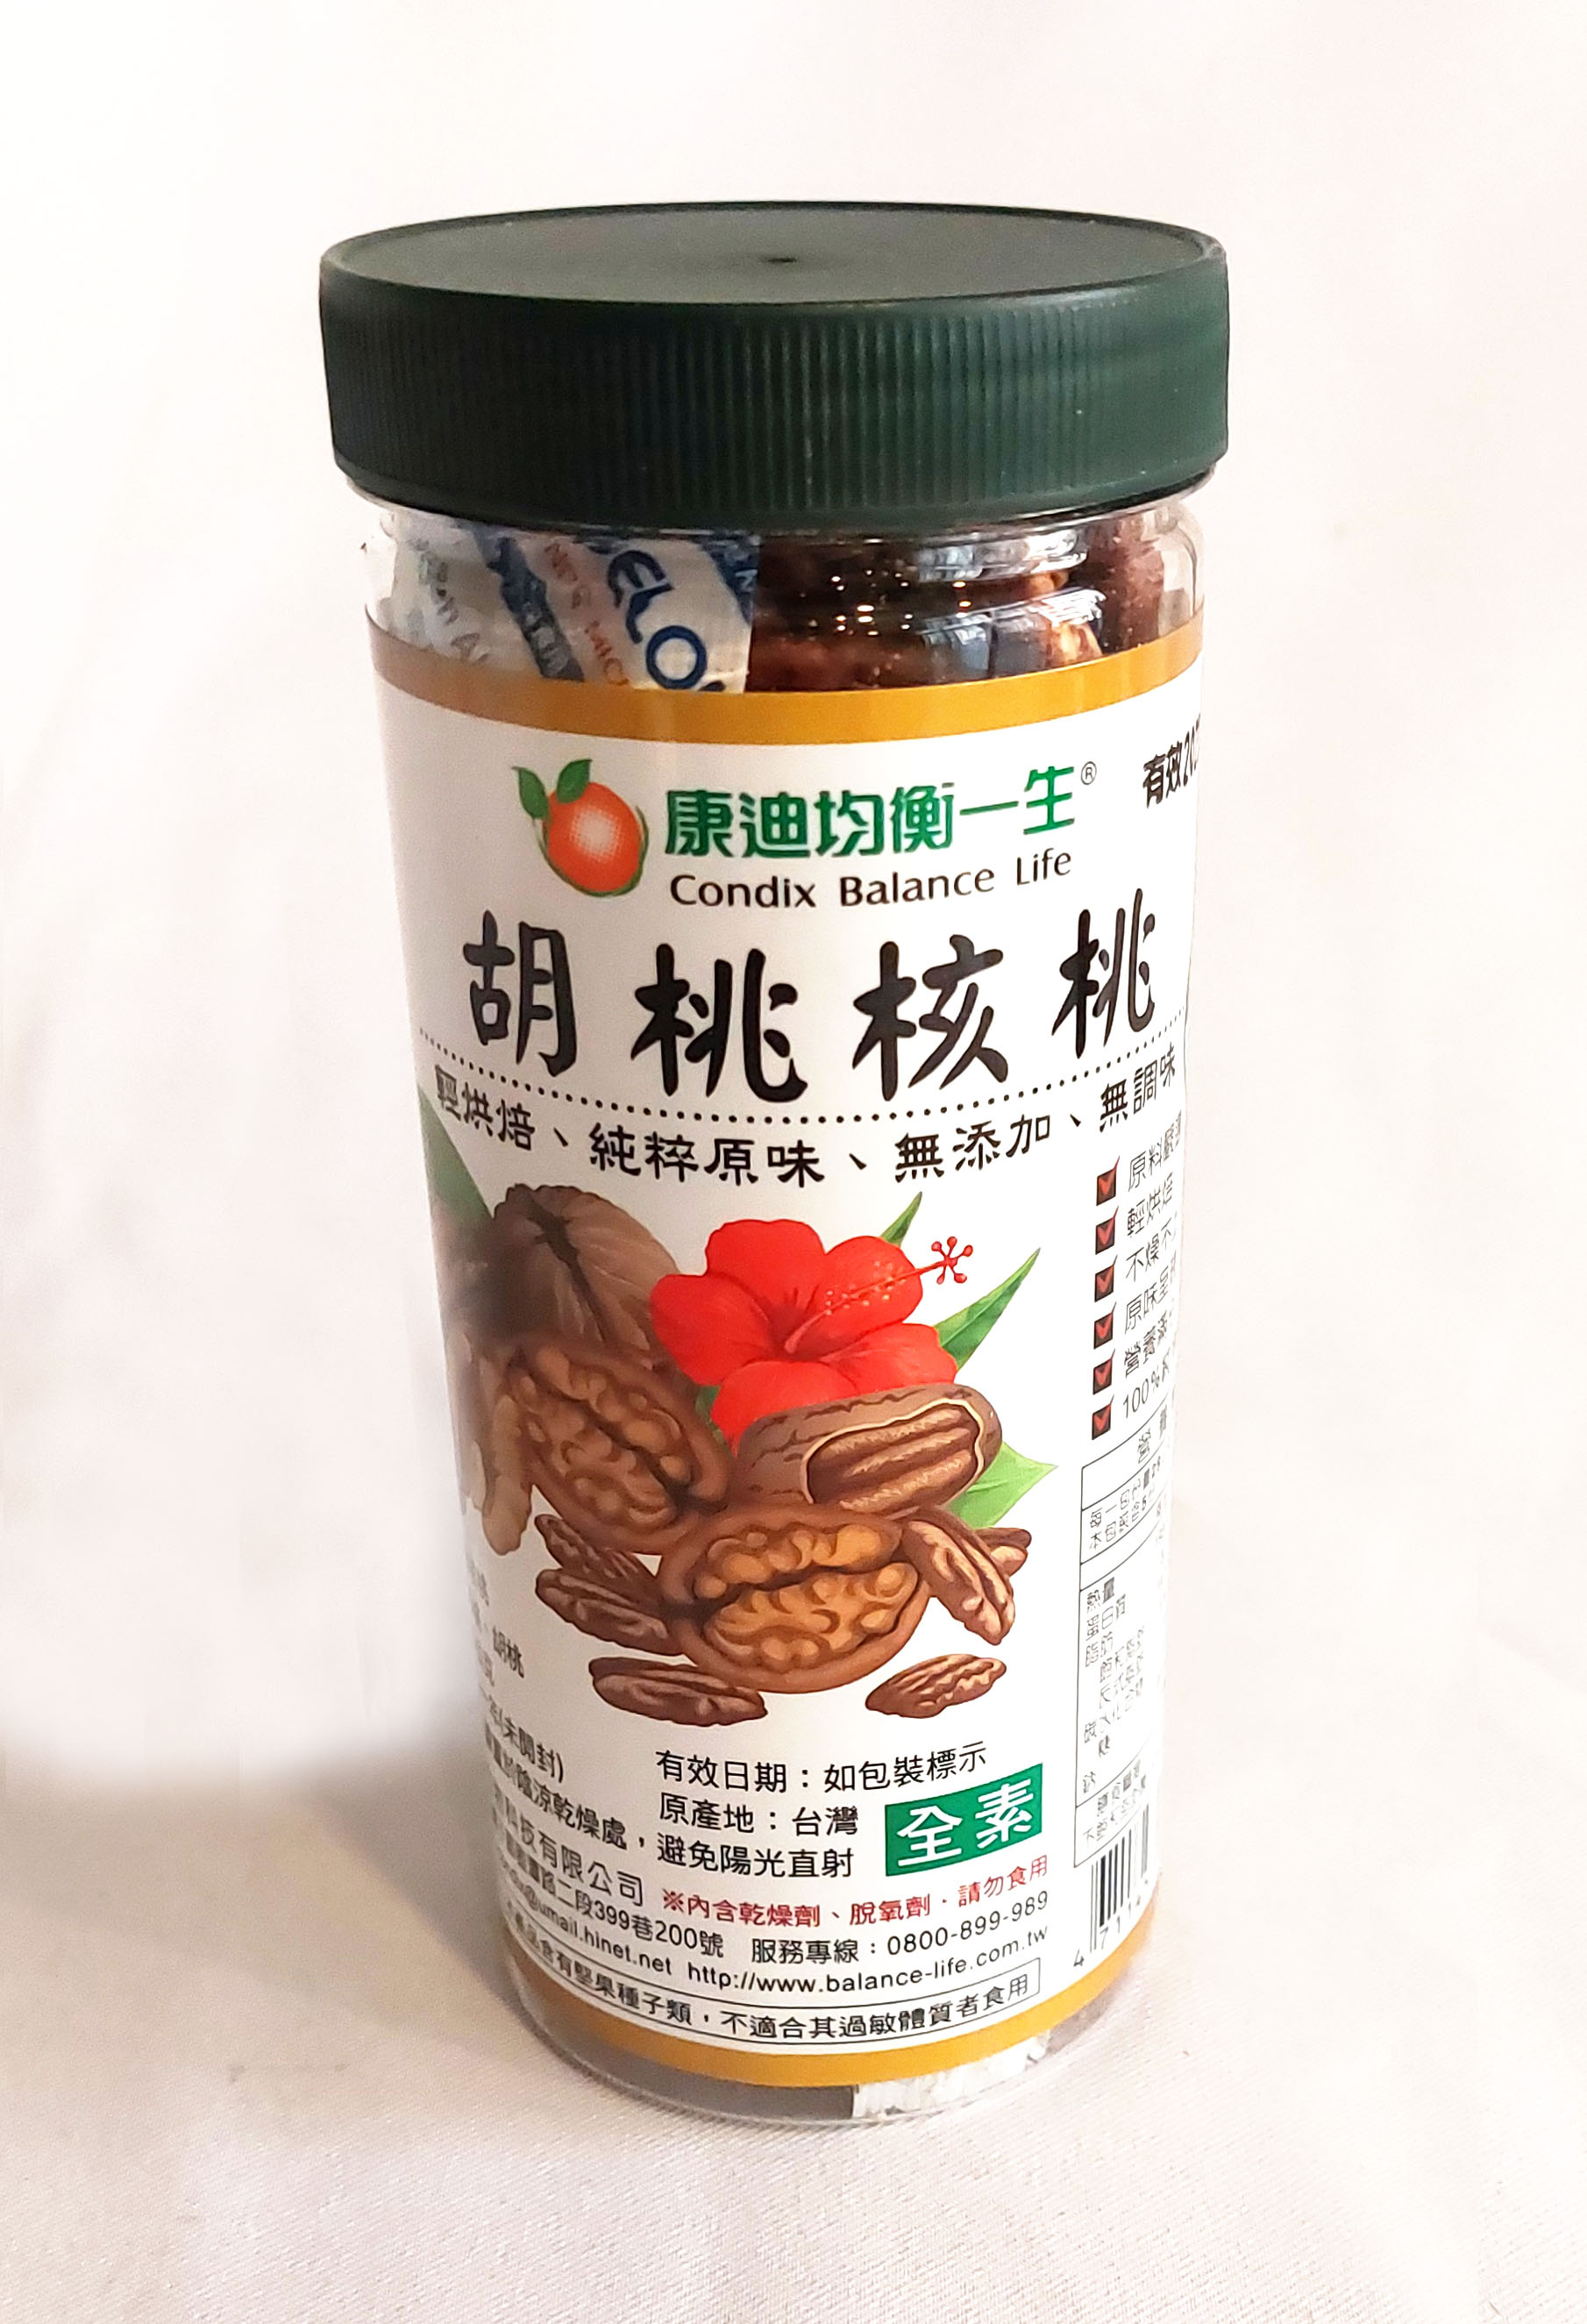 康迪 胡桃核桃 145公克/罐 (原產地台灣) 綜合堅果